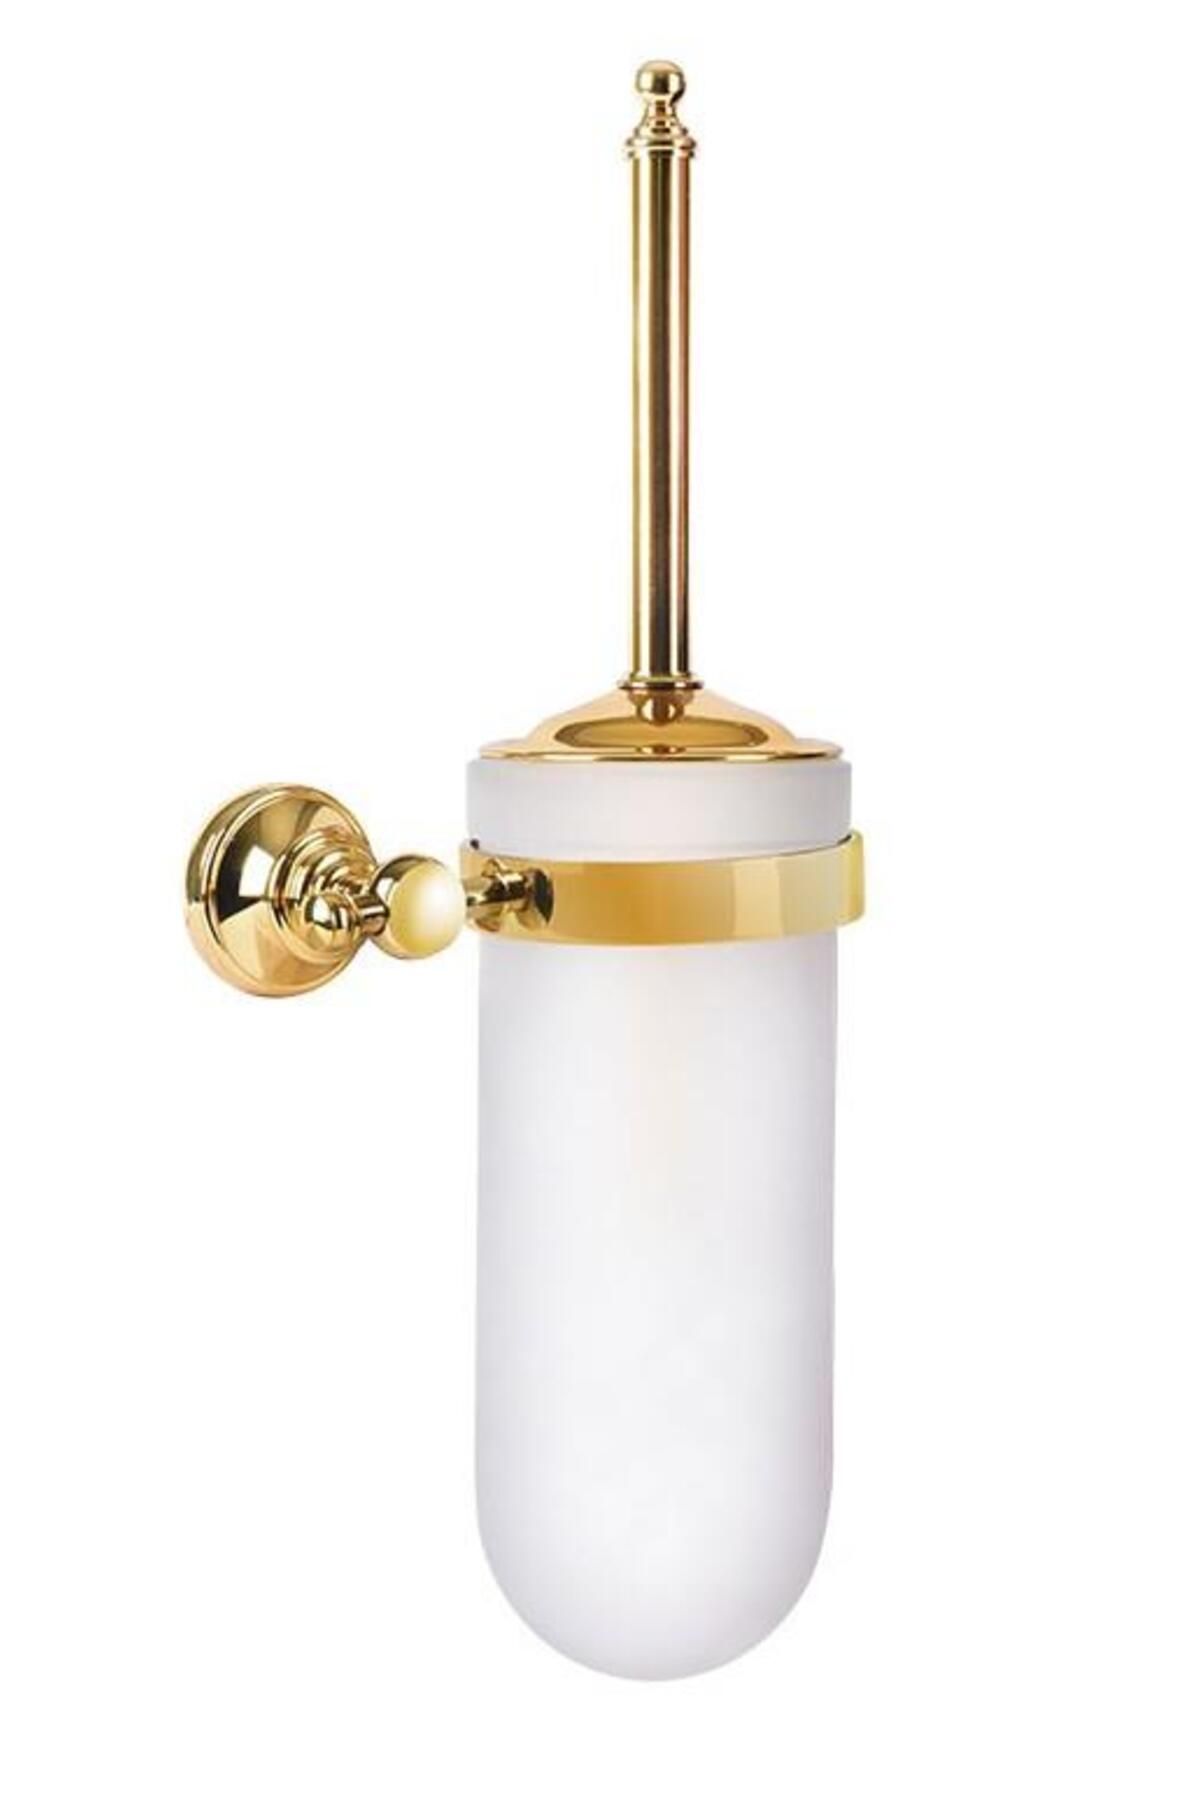 Eca Serel Luna Klozet Tuvalet Fırçalığı Altın Gold Paslanmaz- Pirinç 140110010A